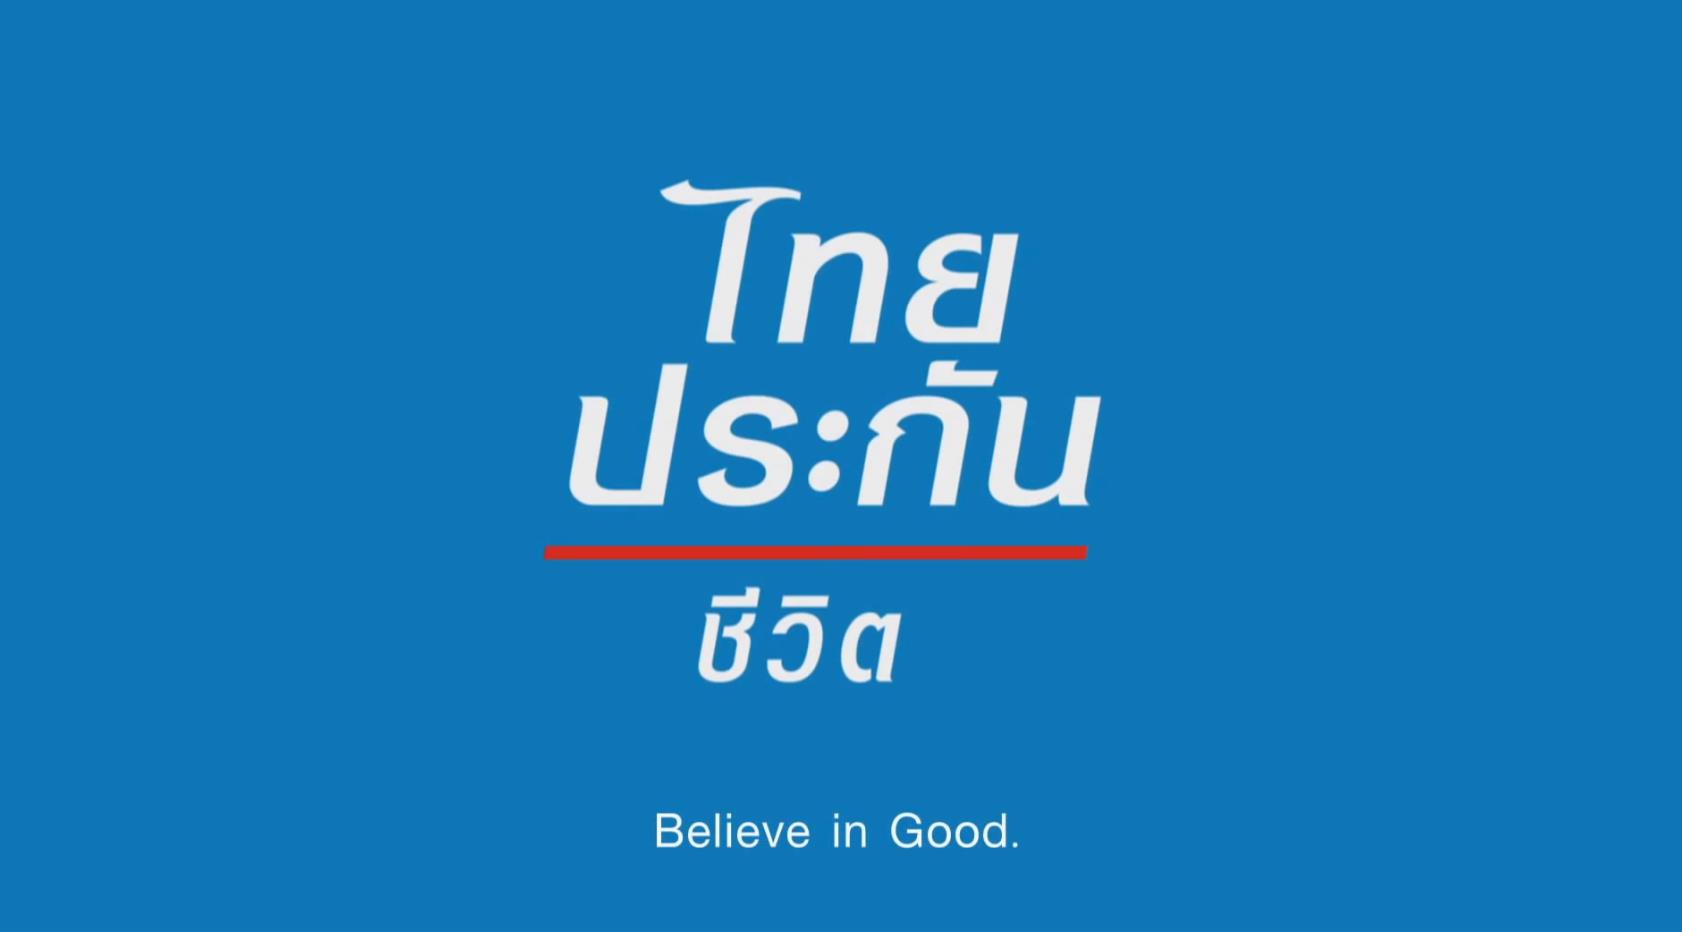 泰国人寿广告-没有名字英雄